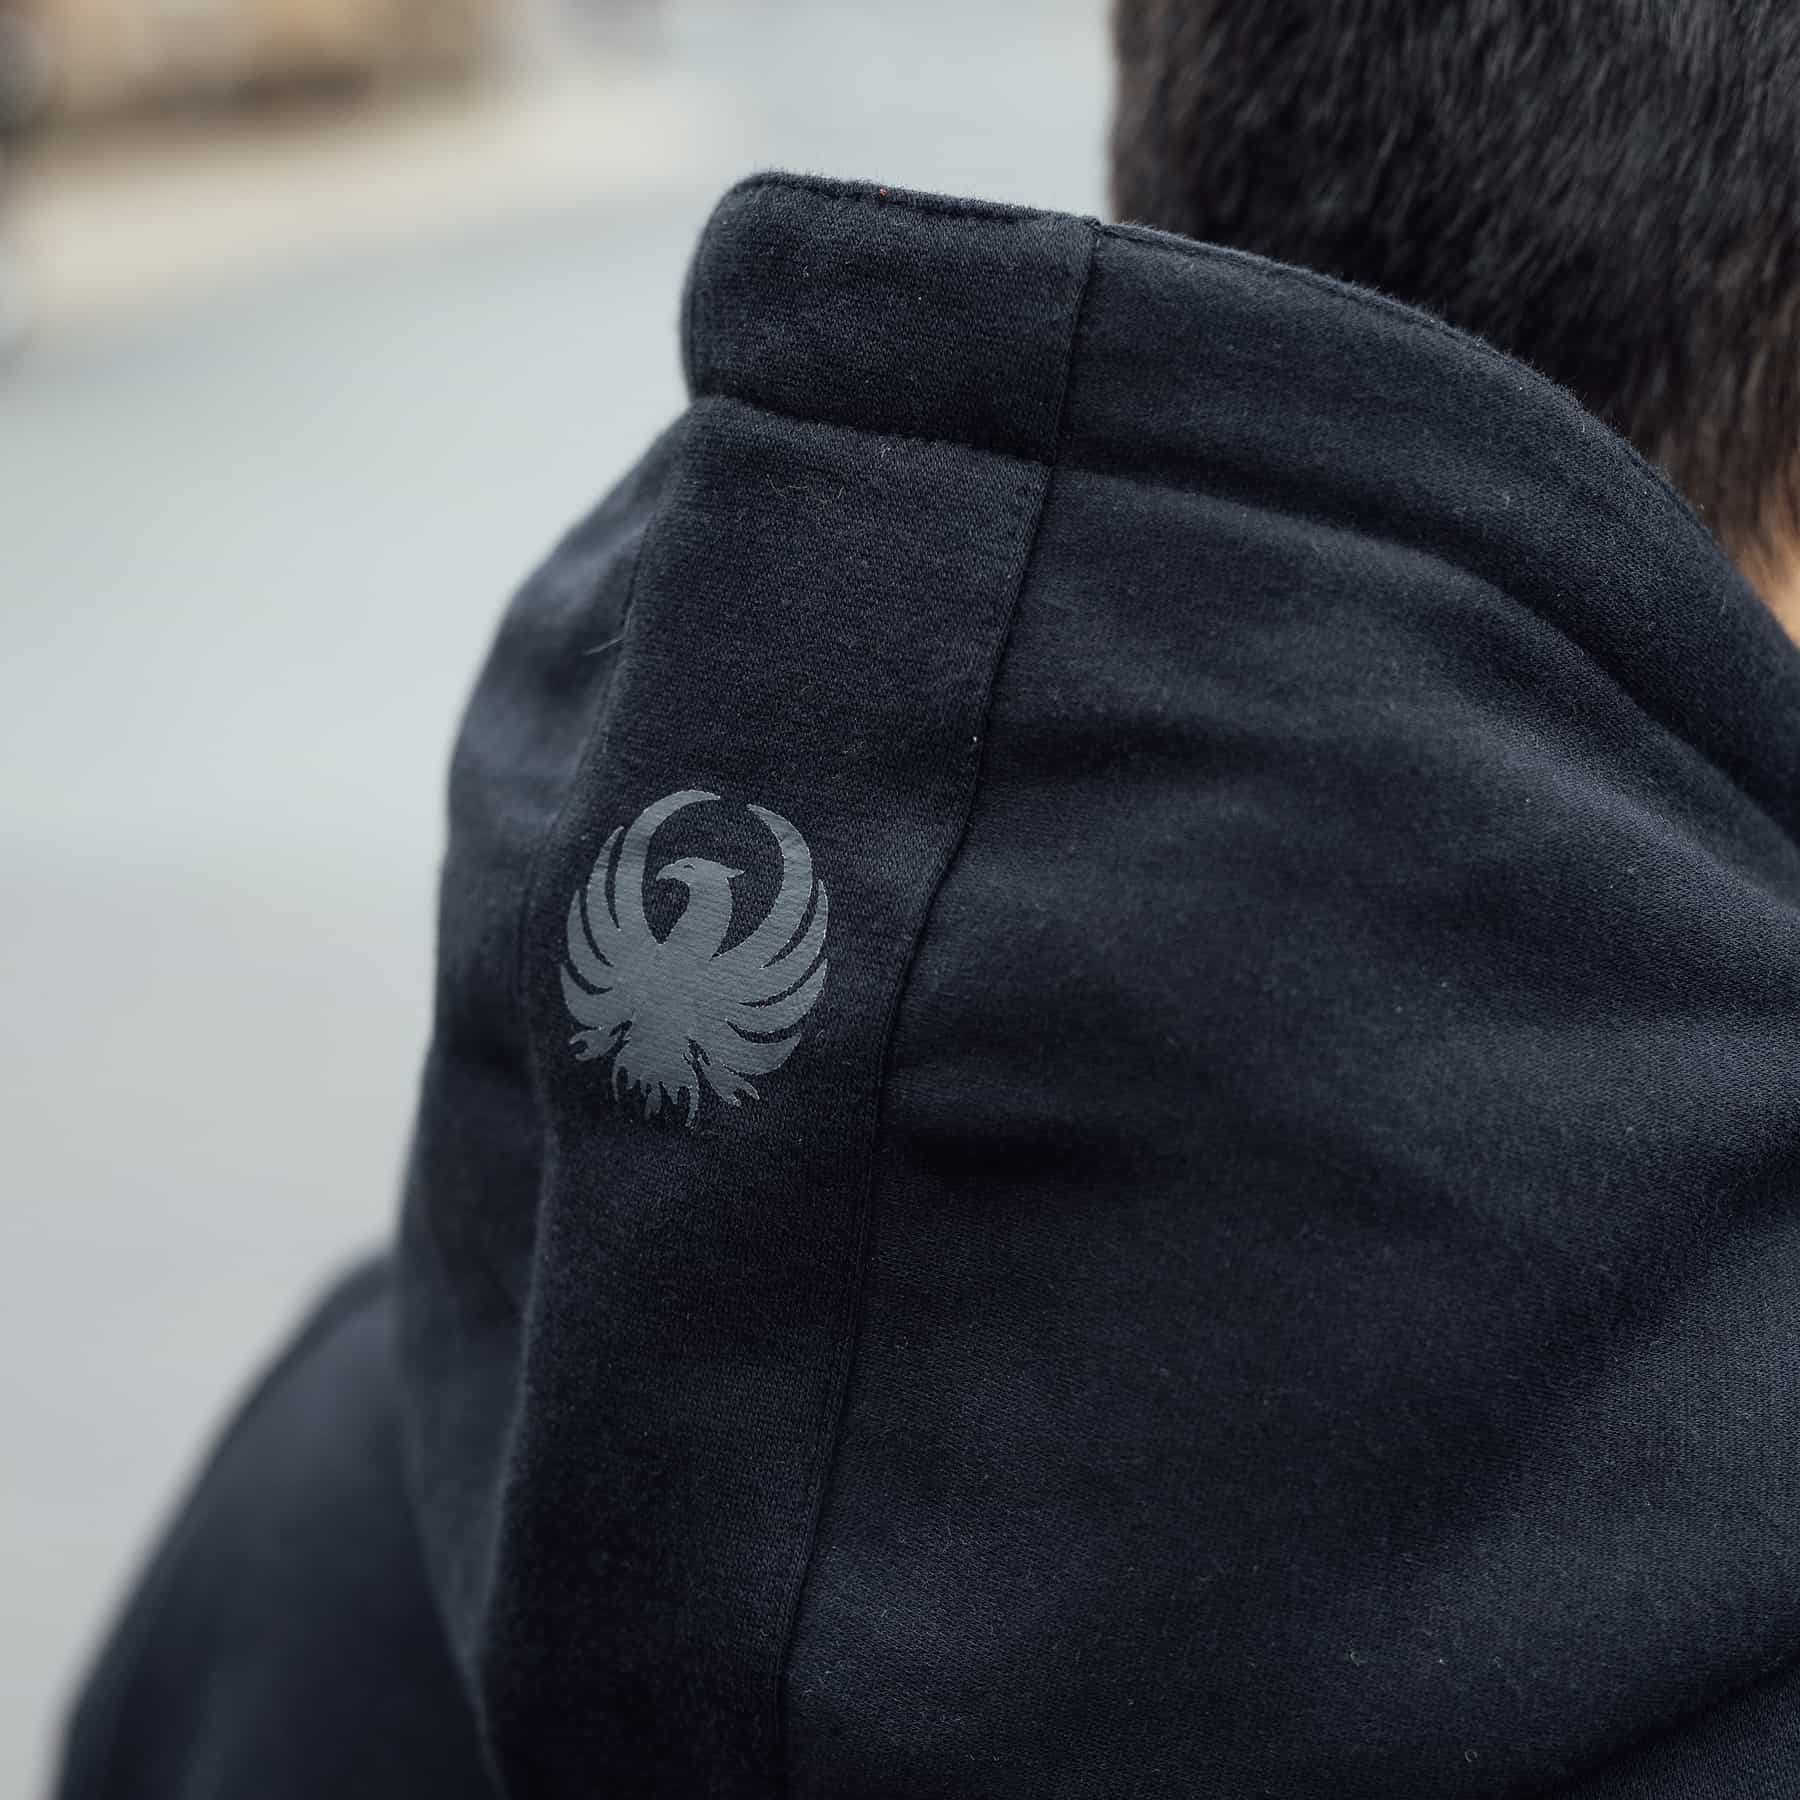 Merlin Stealth Pro hoodie in black